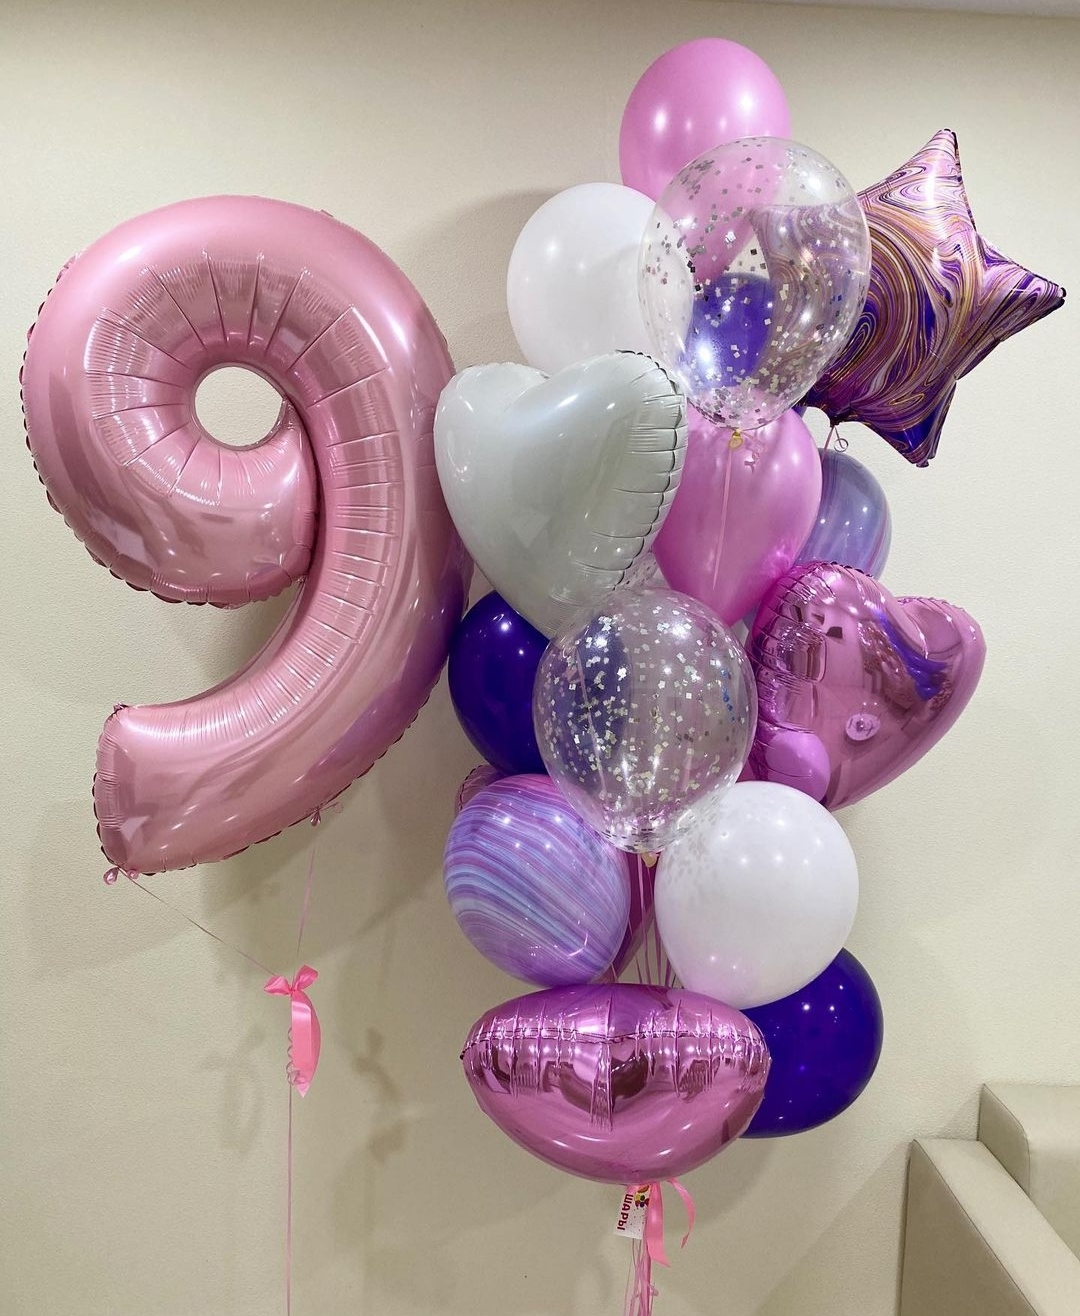 нежная сборка шаров в розовых тонах с фольгированной цифрой девочке на 9 лет